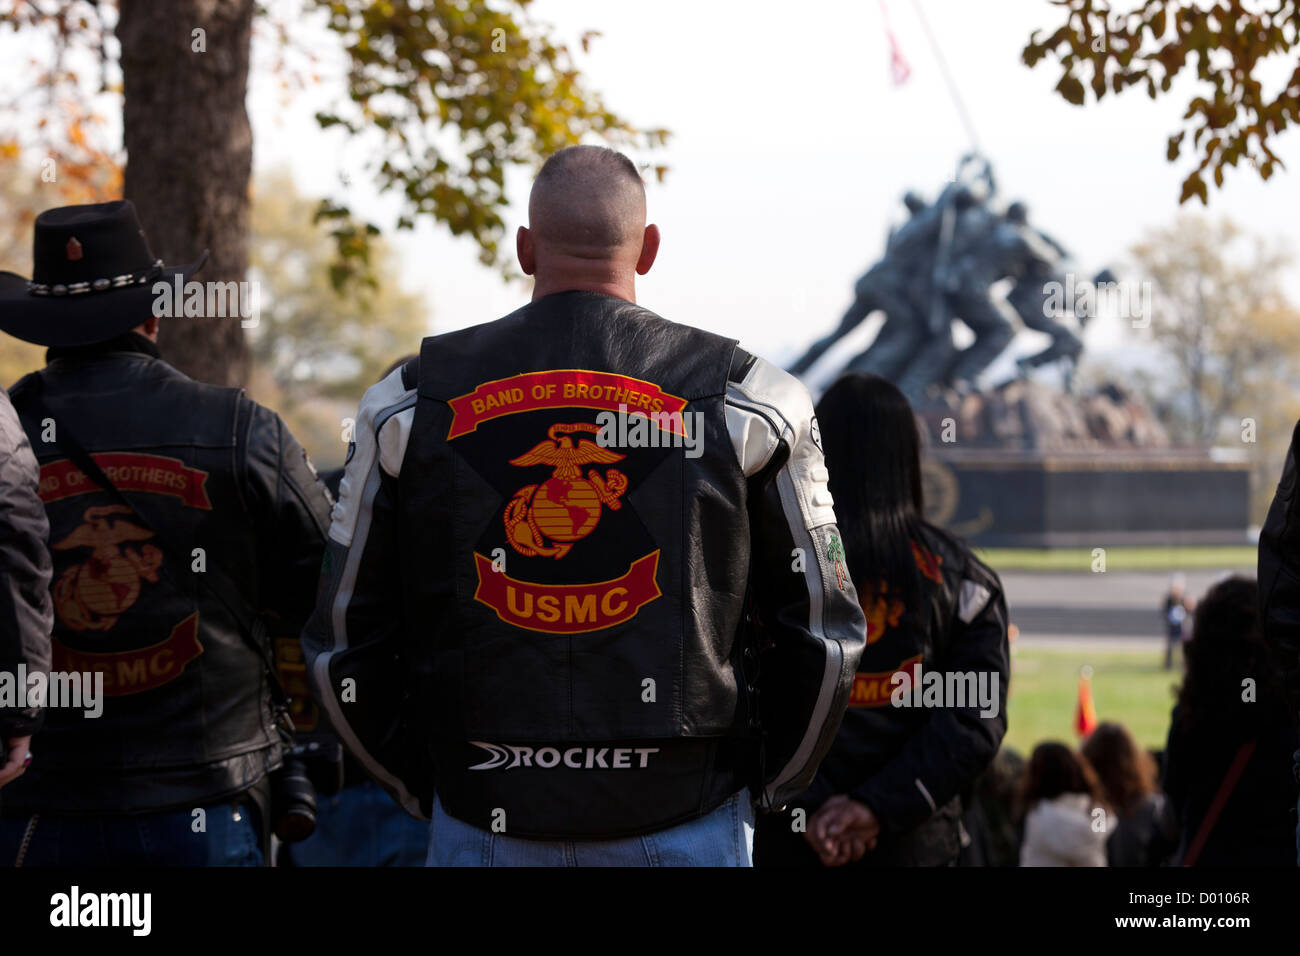 Banda de hermanos Marines moto club de equitación la insignia de chaqueta Foto de stock